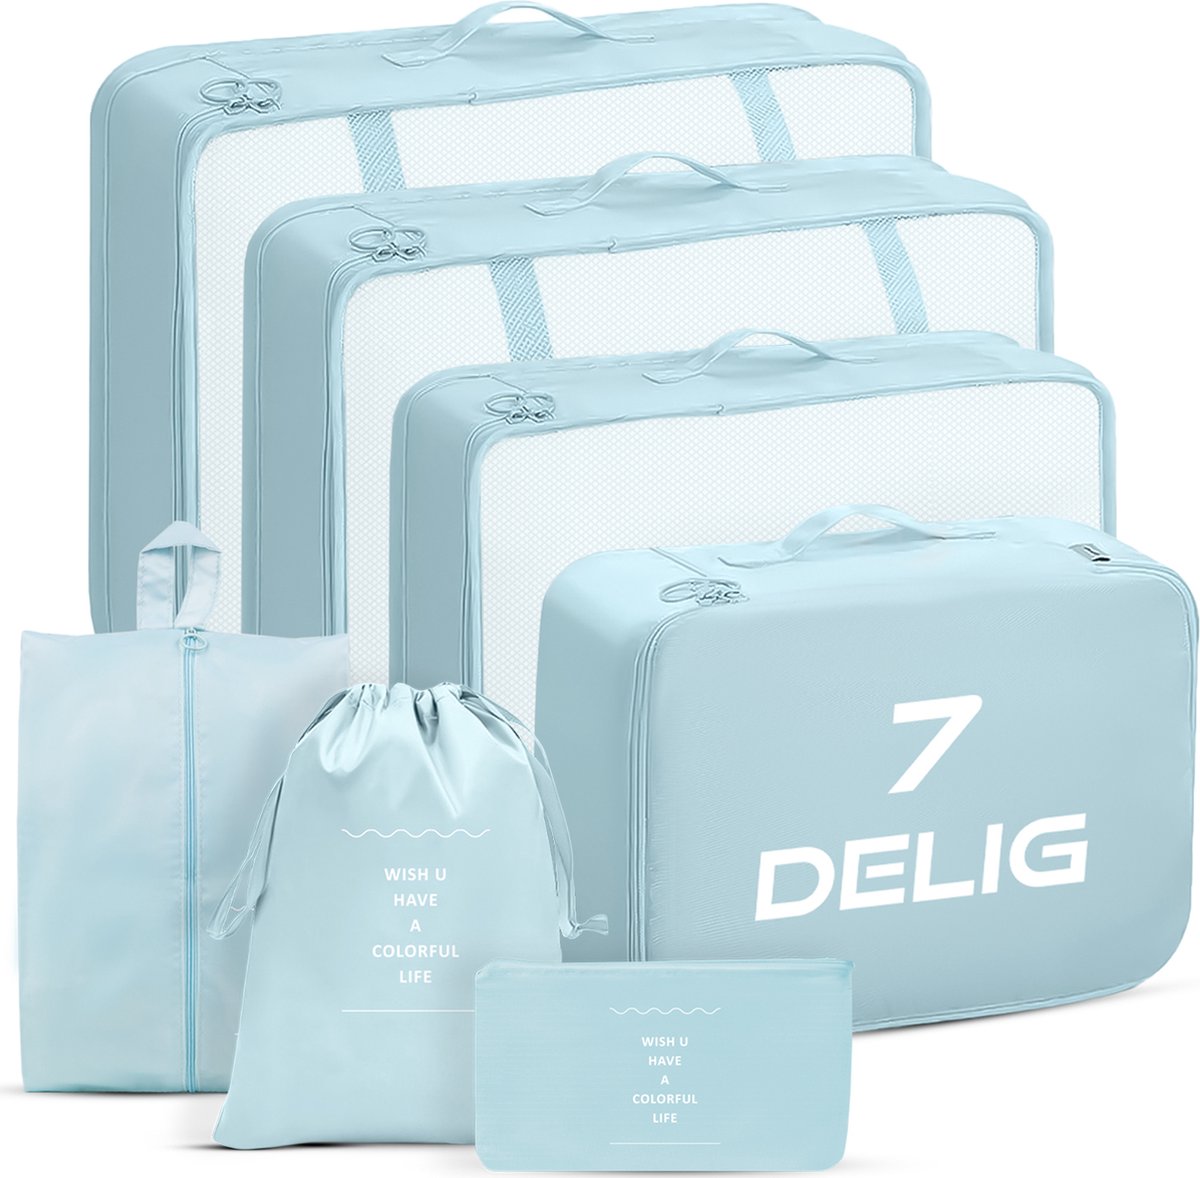 Ensemble de cubes d'emballage - organisateur de valise ou de sac - sacs  d'emballage - bleu clair deluxe